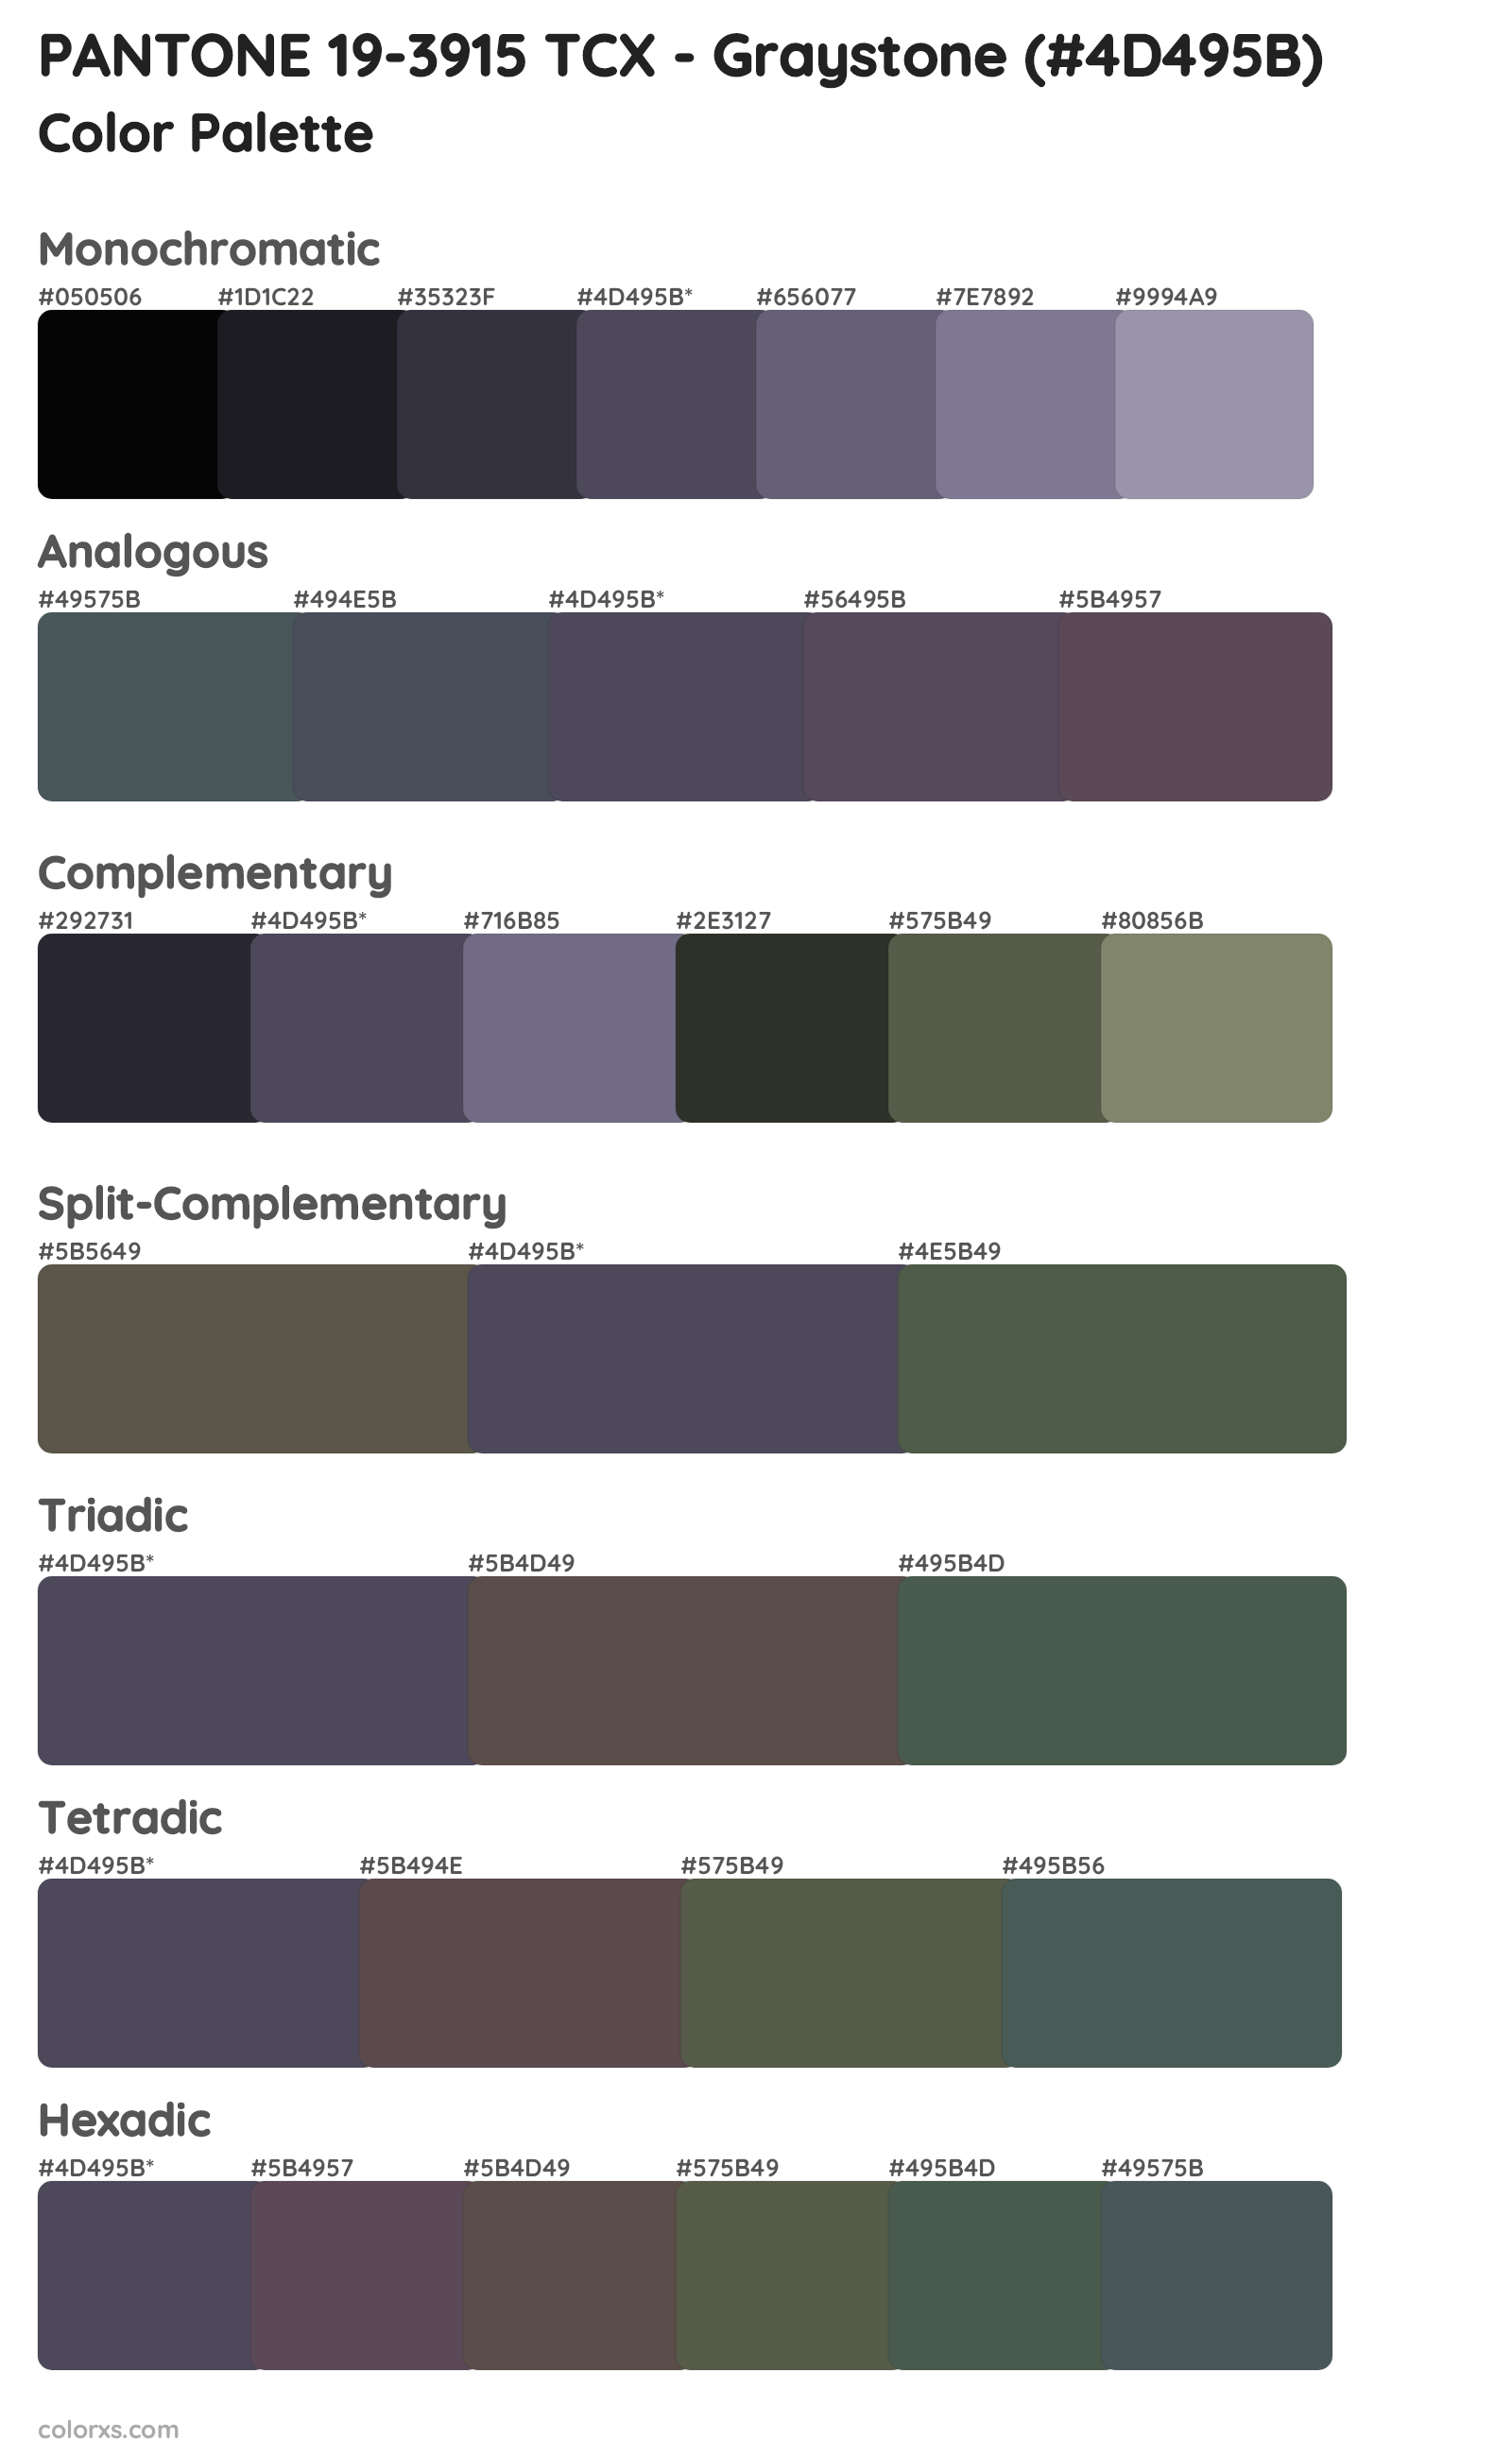 PANTONE 19-3915 TCX - Graystone Color Scheme Palettes